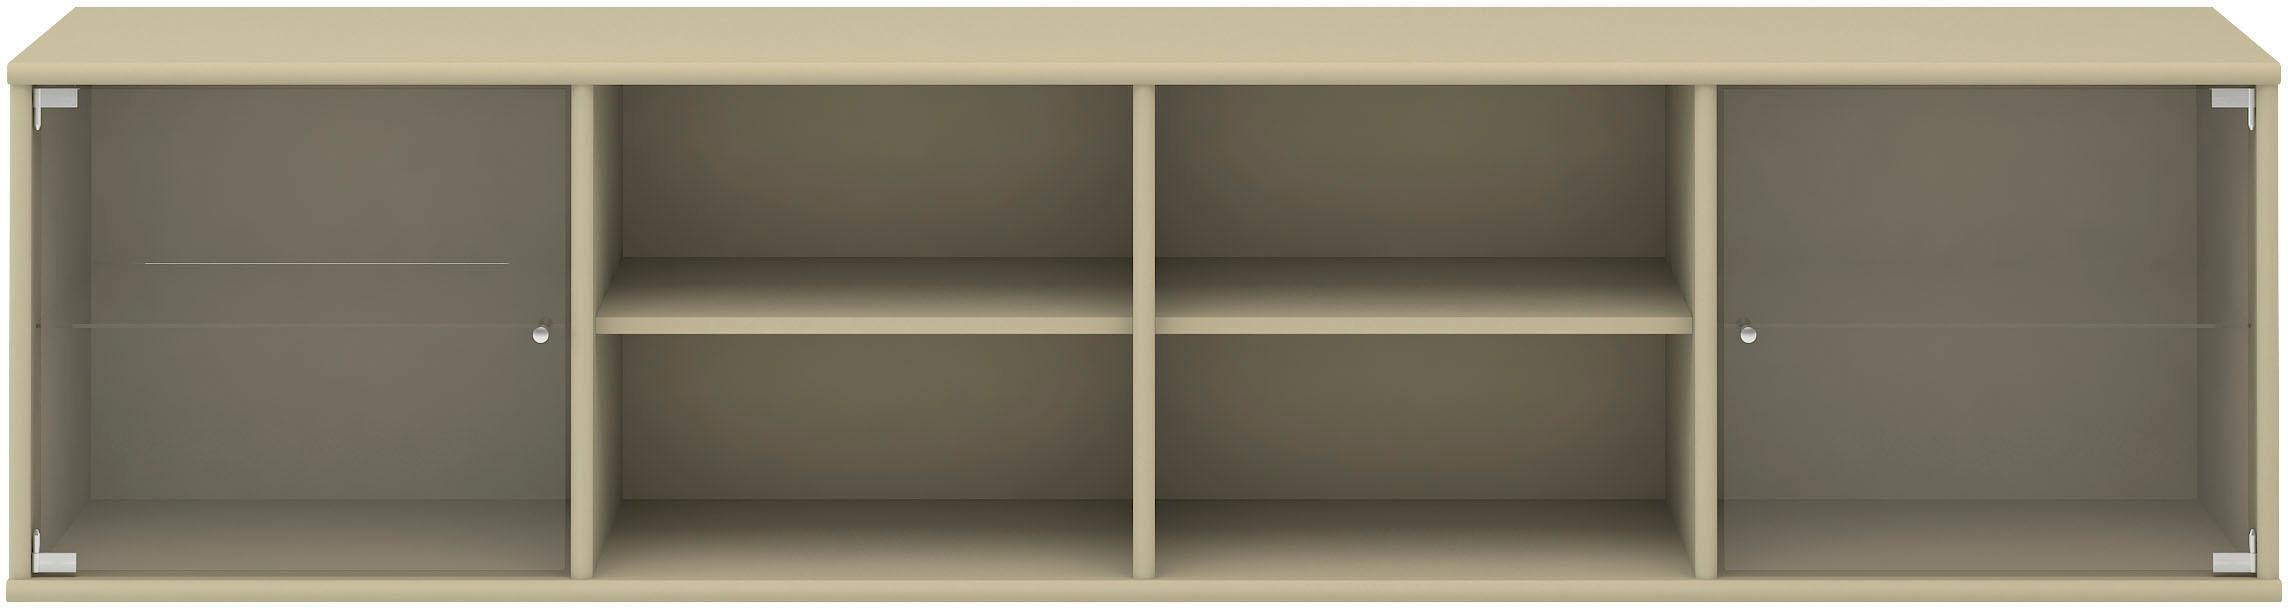 Hammel Furniture Regal »Mistral«, mit zwei Glastüren, B: 177 cm, lowboard, anpassungsbar  Designmöbel auf Rechnung kaufen | Regale